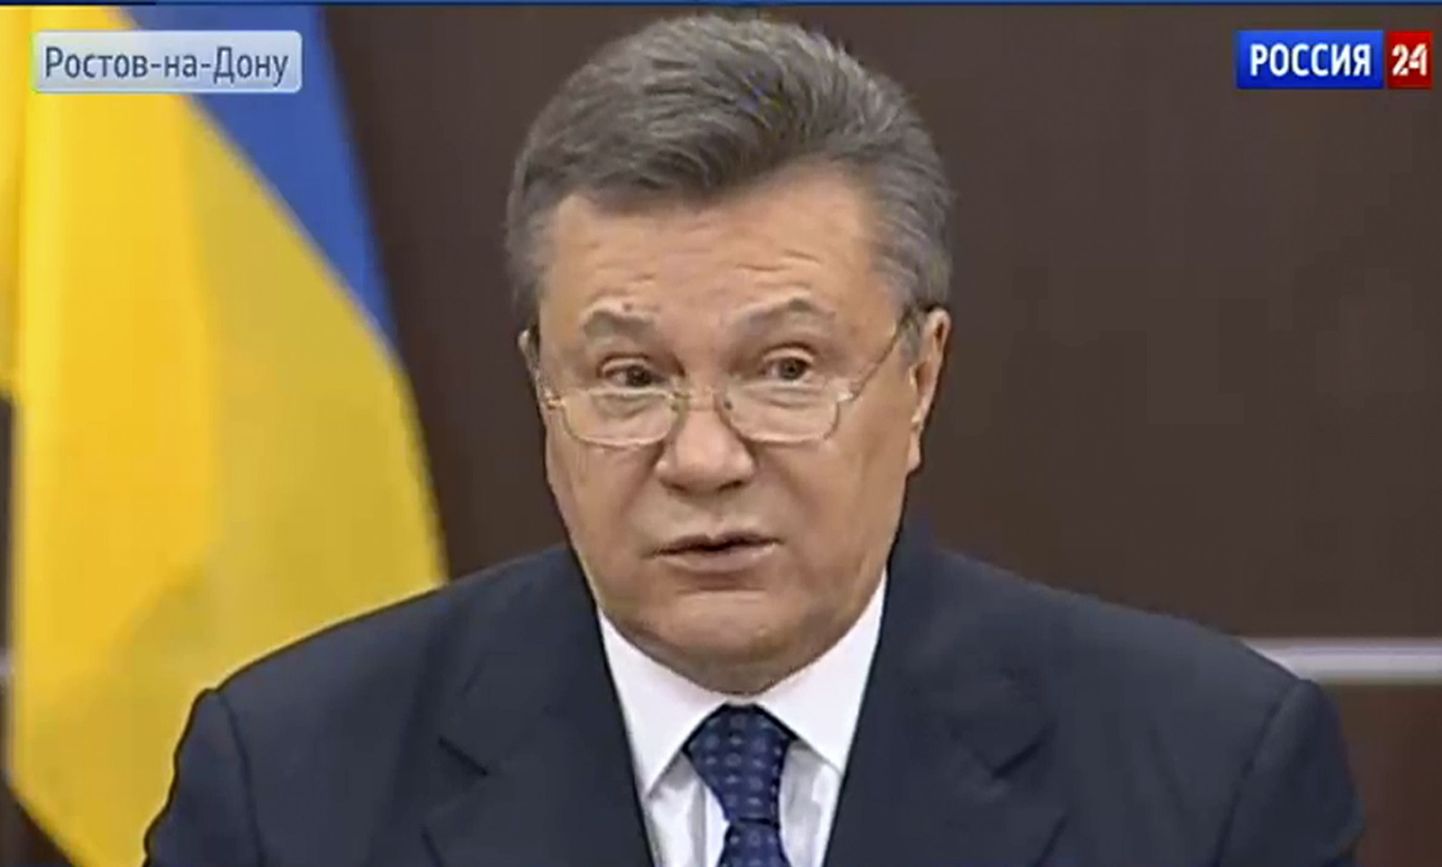 Ukraina endine presidendent Viktor Janukovõtš aprillis Rossija-24 vahendusel.